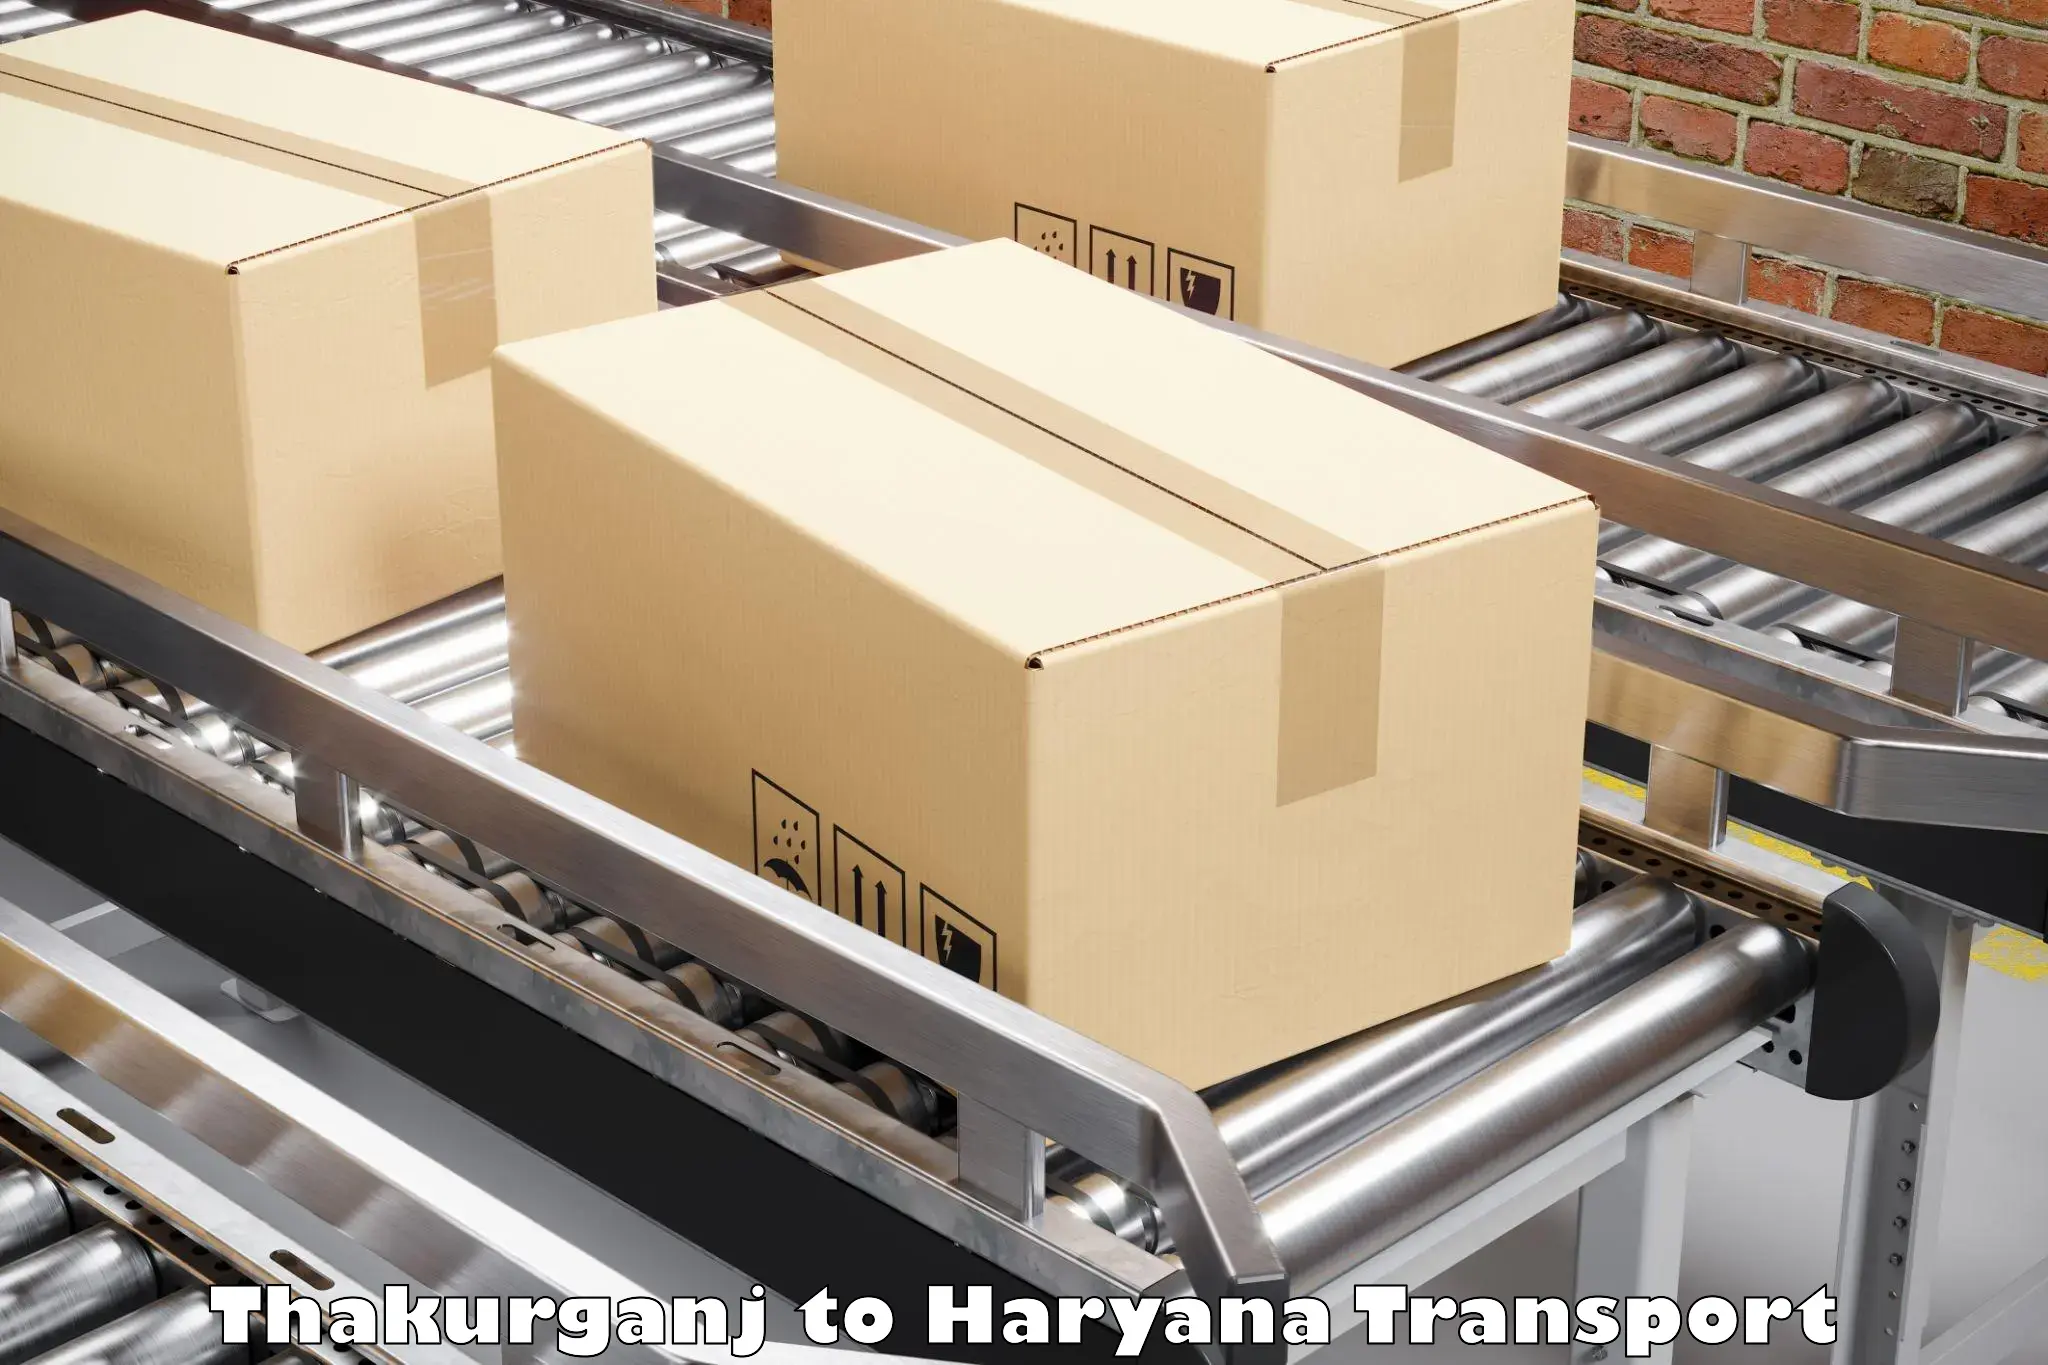 Online transport booking Thakurganj to Haryana